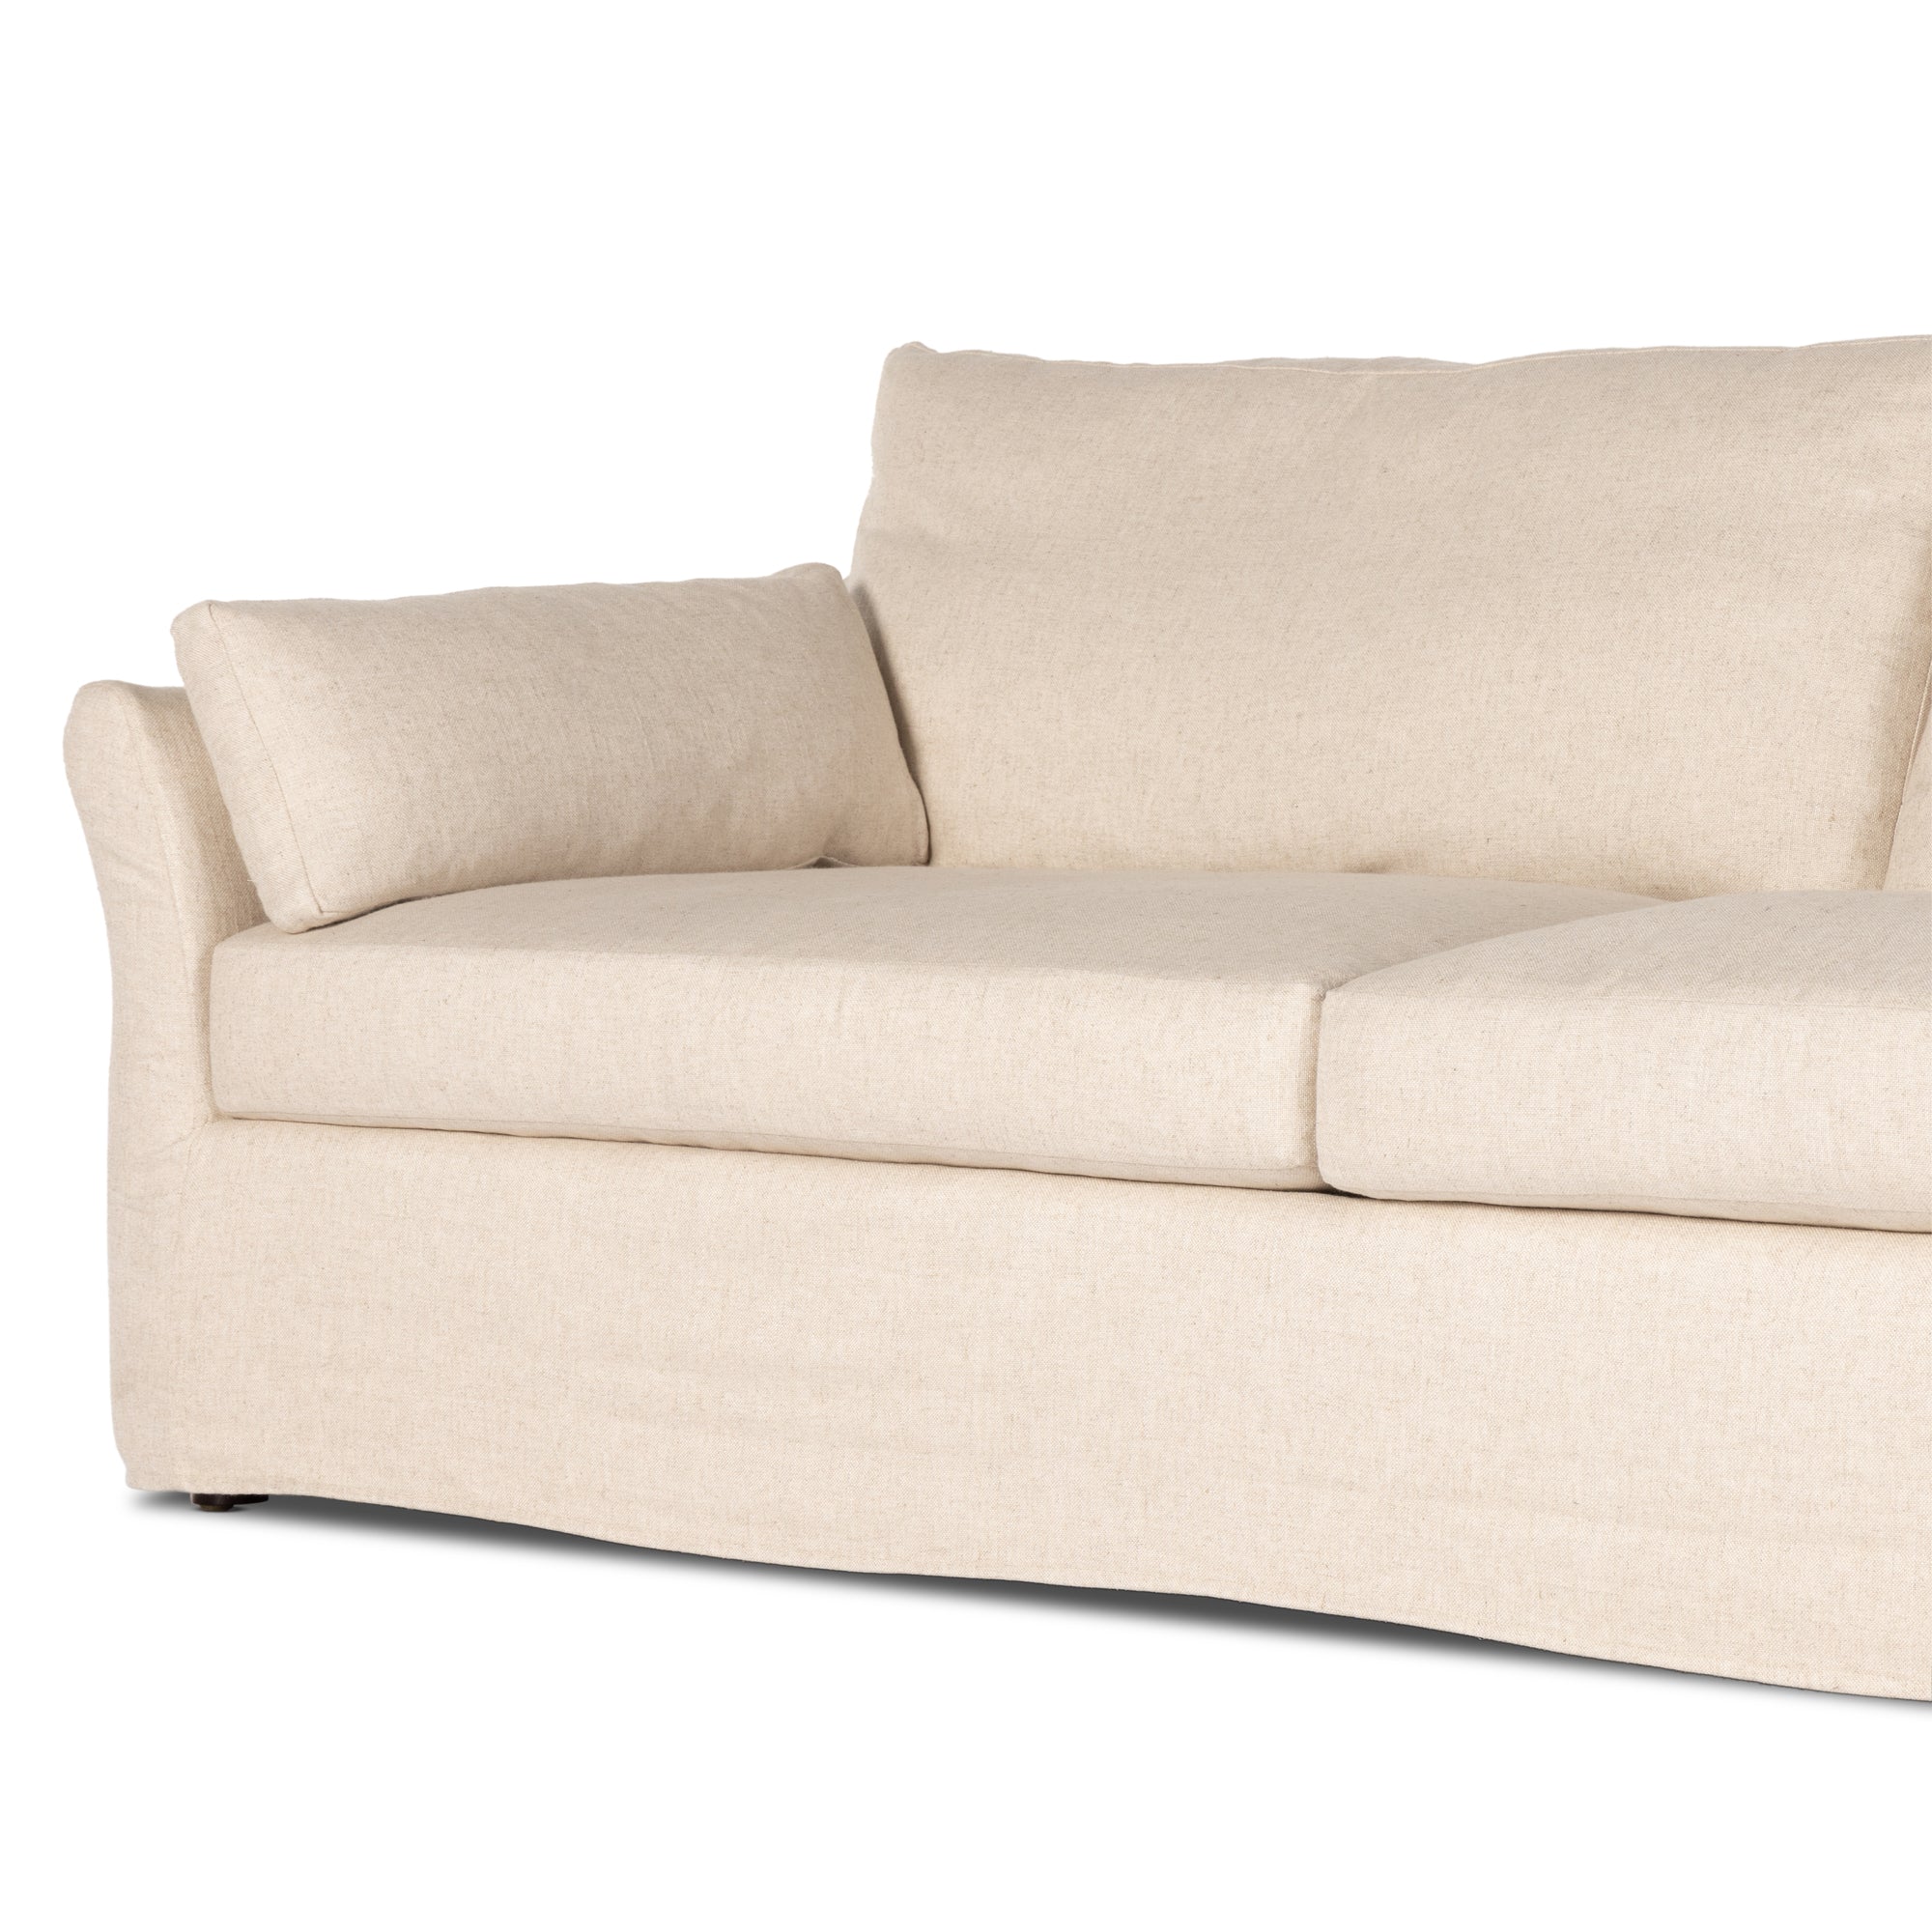 Delray Slipcover Sofa